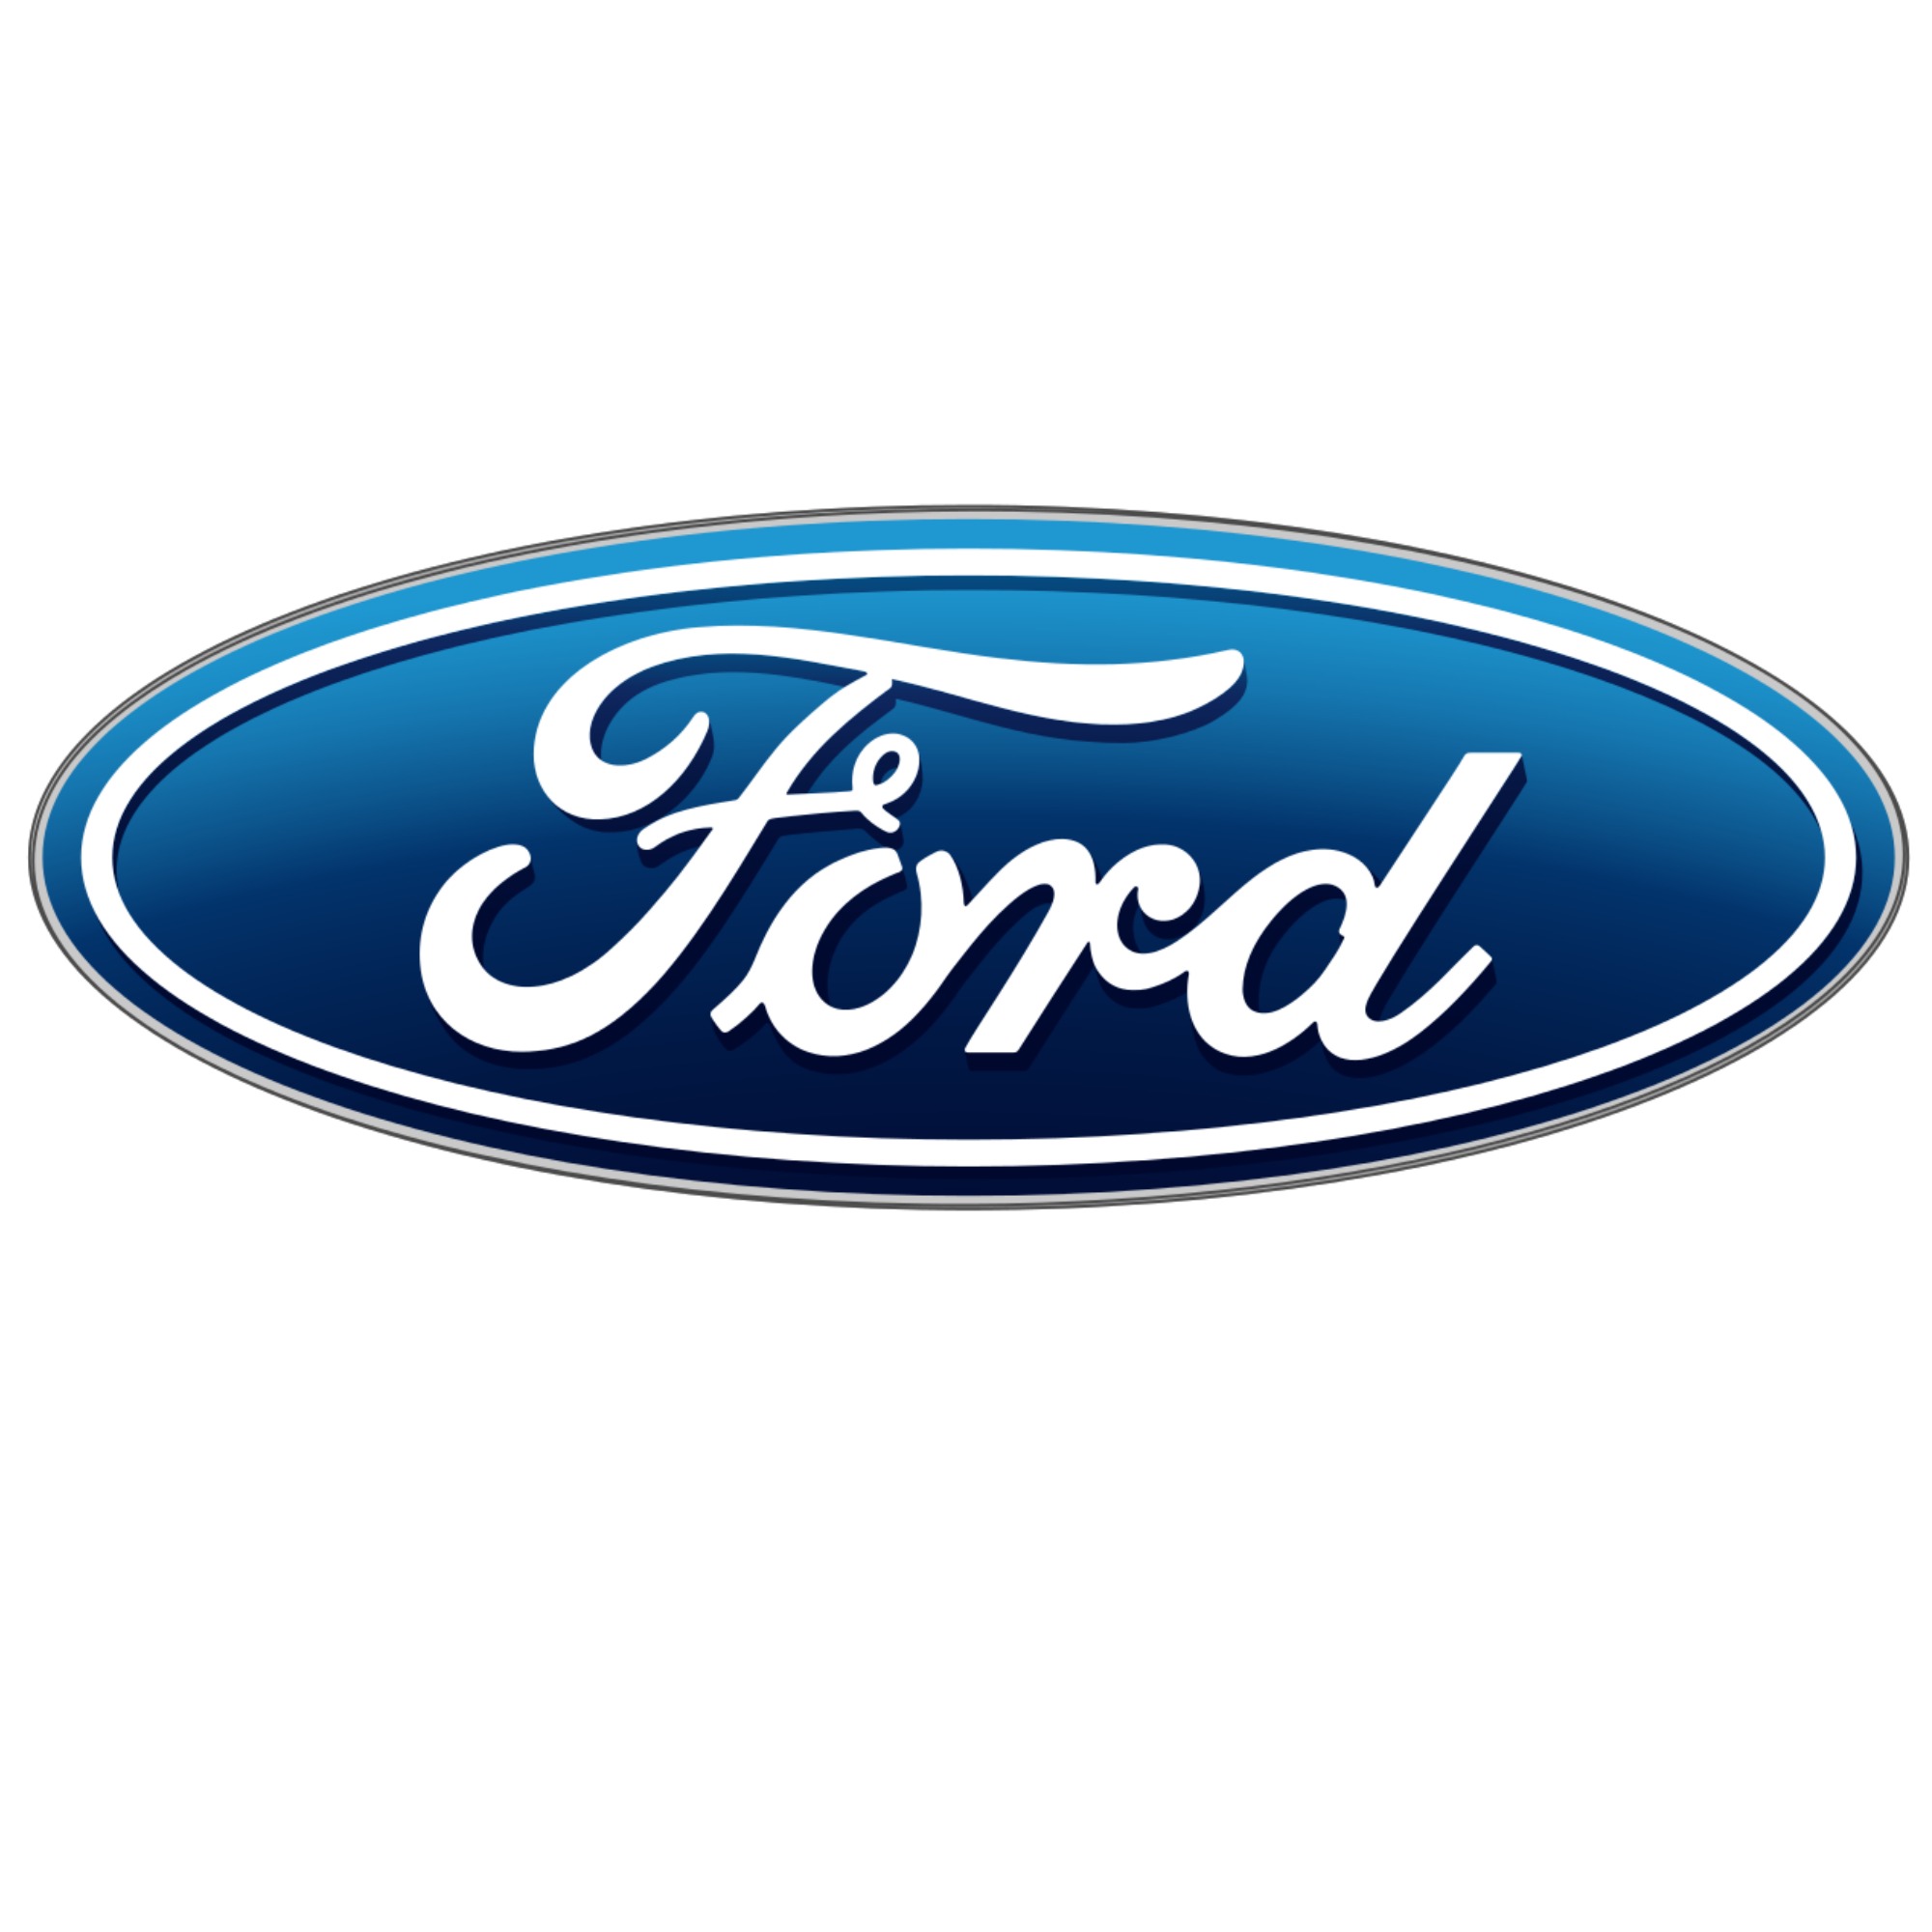 Autobén S.L (Ford)